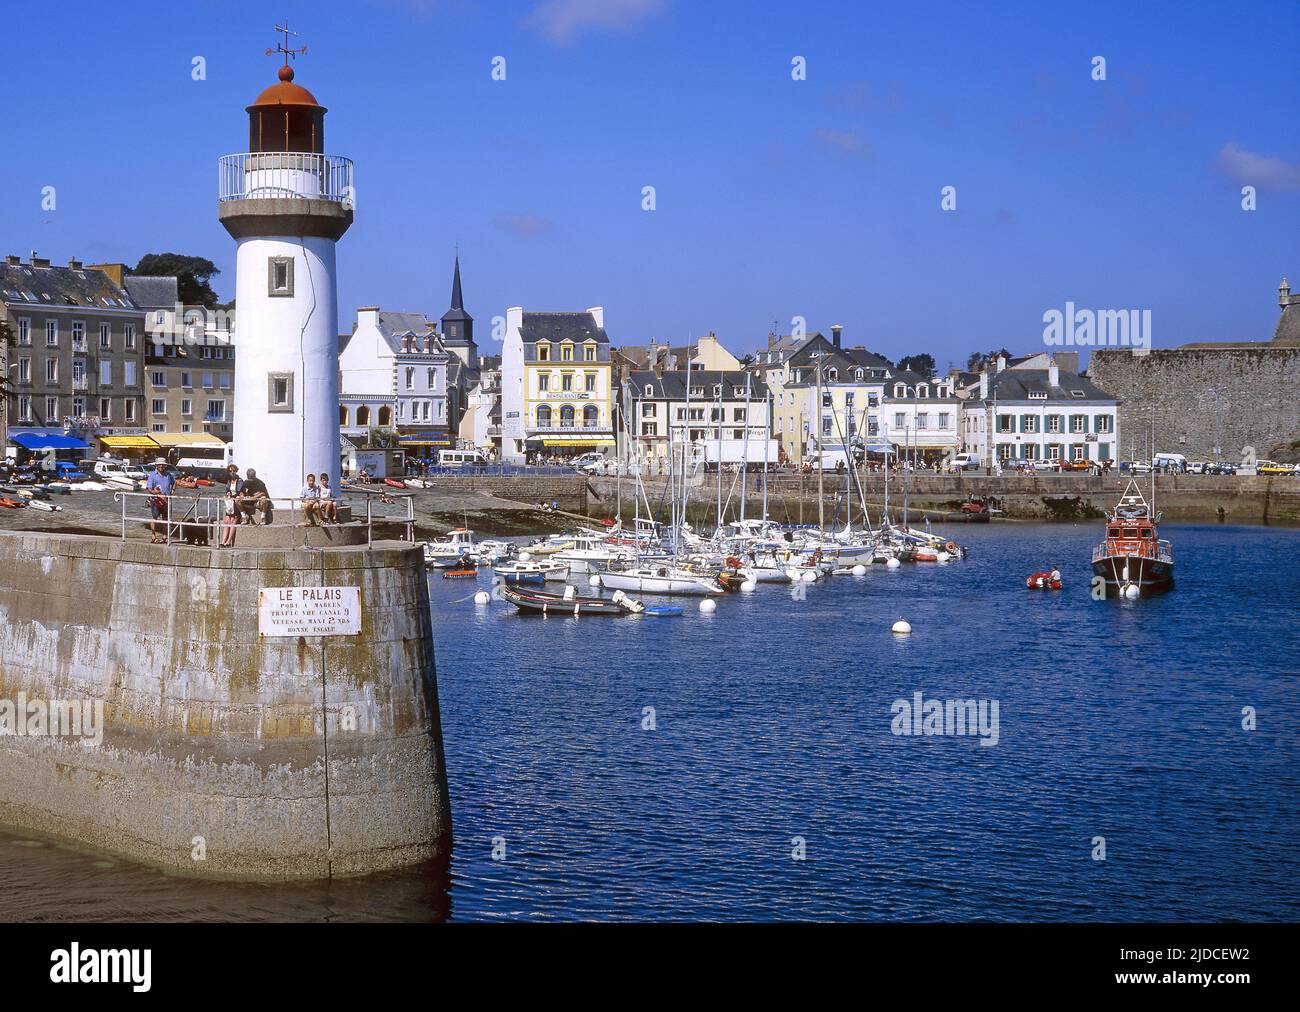 France, Morbihan Belle-Ile-en-Mer, Le Palais Stock Photo